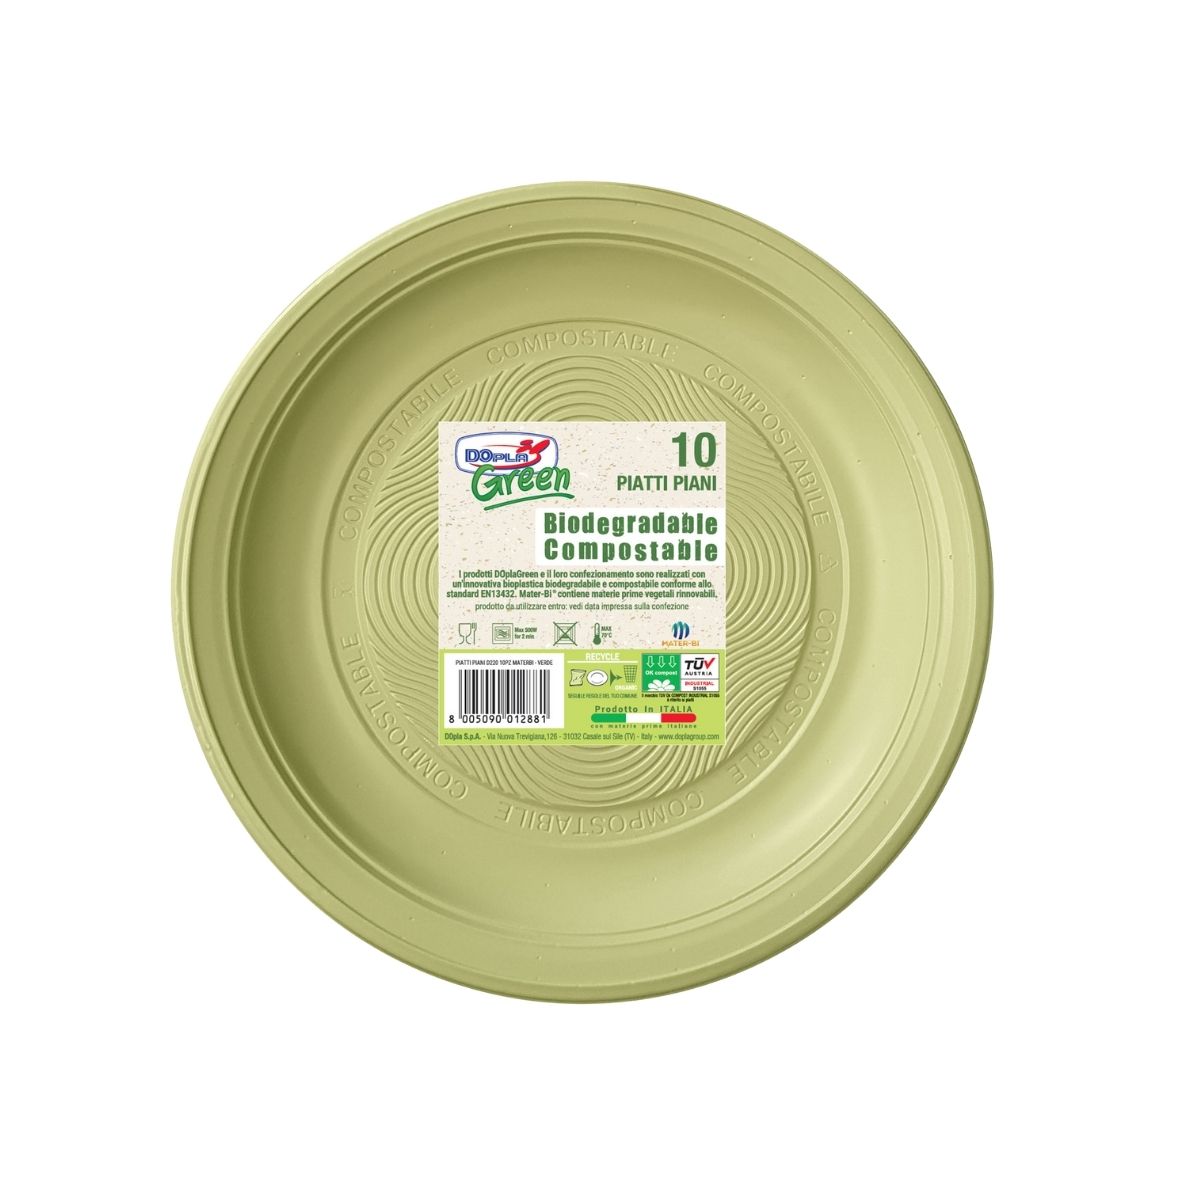 10 pz Piatti biodegradabili da € 1,45 + Iva